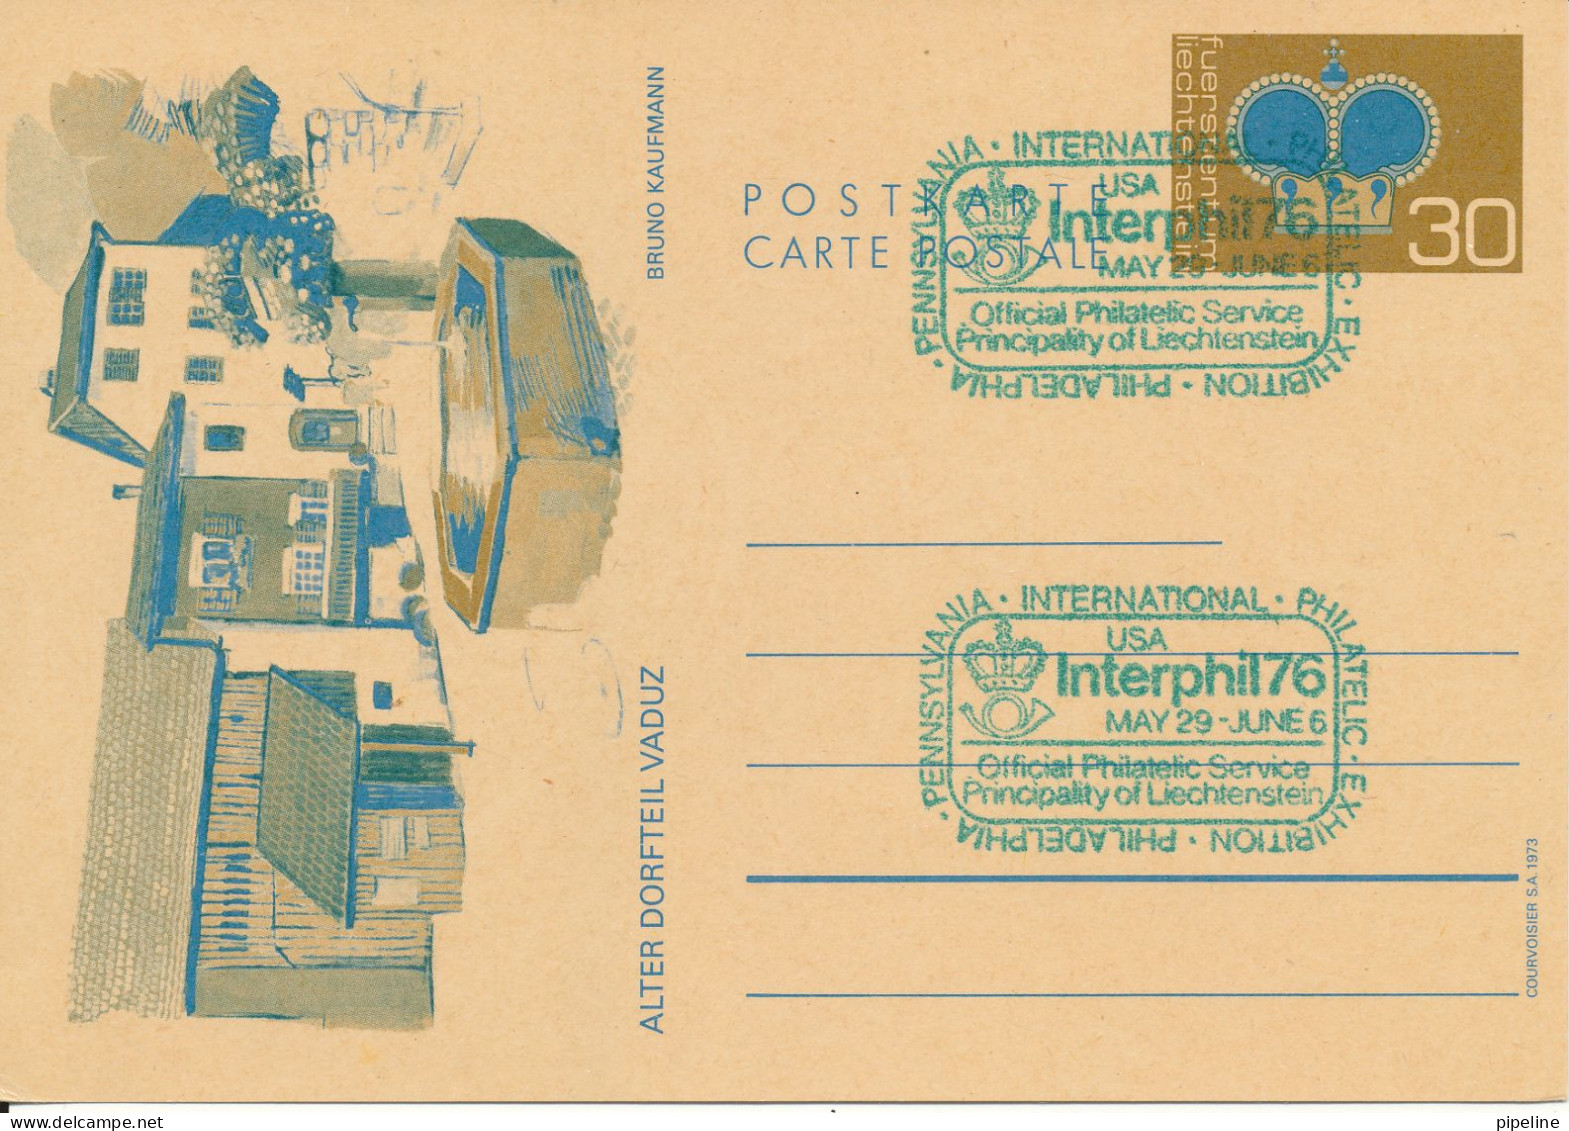 Liechtenstein Postal Stationery Card Interphil 76 USA 29-5 - 6-6-1976 - Interi Postali